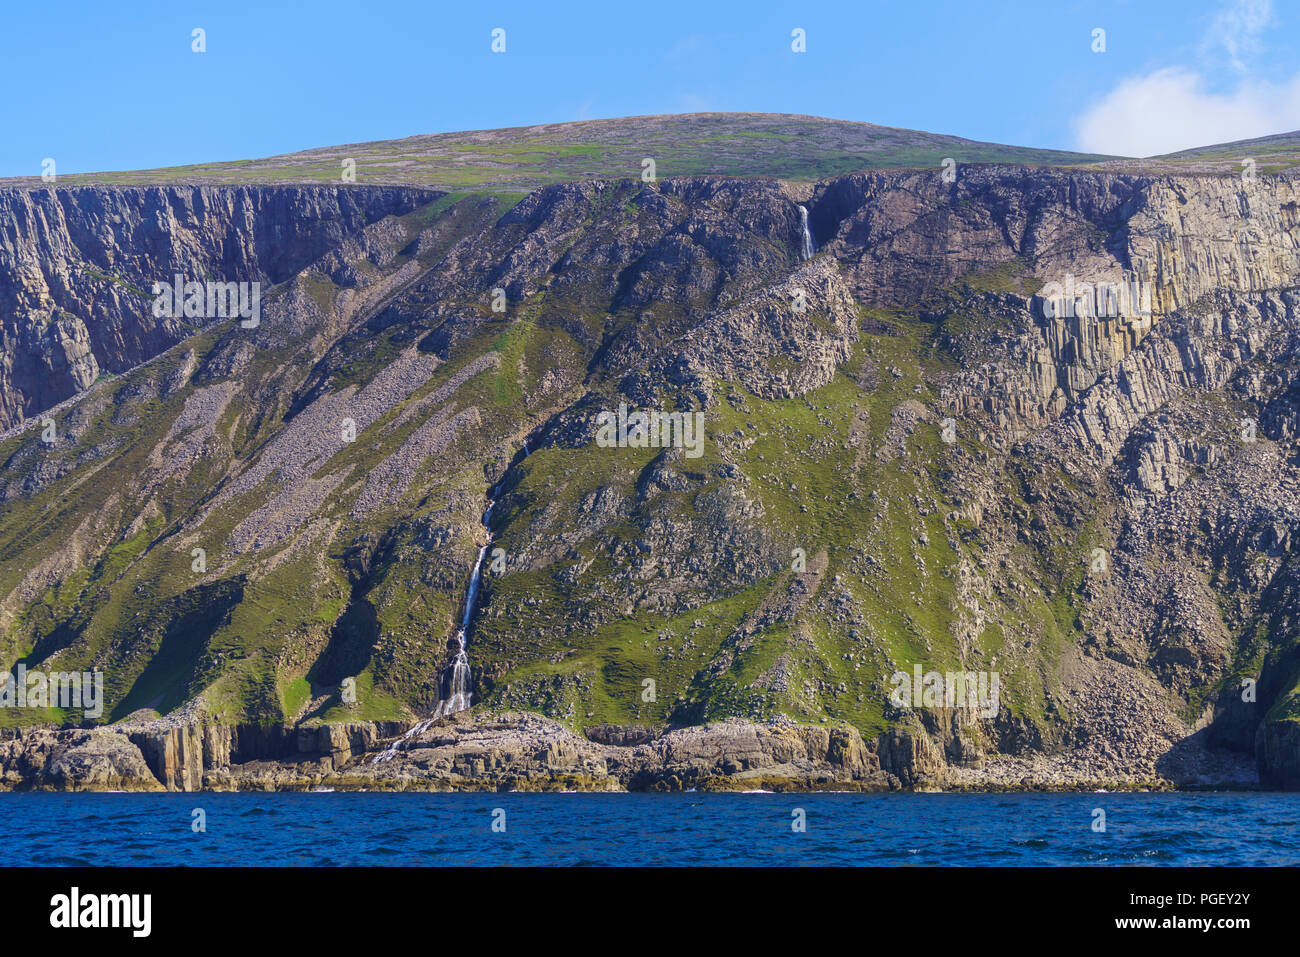 Ein Wasserfall Kaskaden hinunter das Gesicht eines Sea Cliff auf der Insel Rum. Rum ist eine der kleinen Inseln der Inneren Hebriden in Schottland. Stockfoto